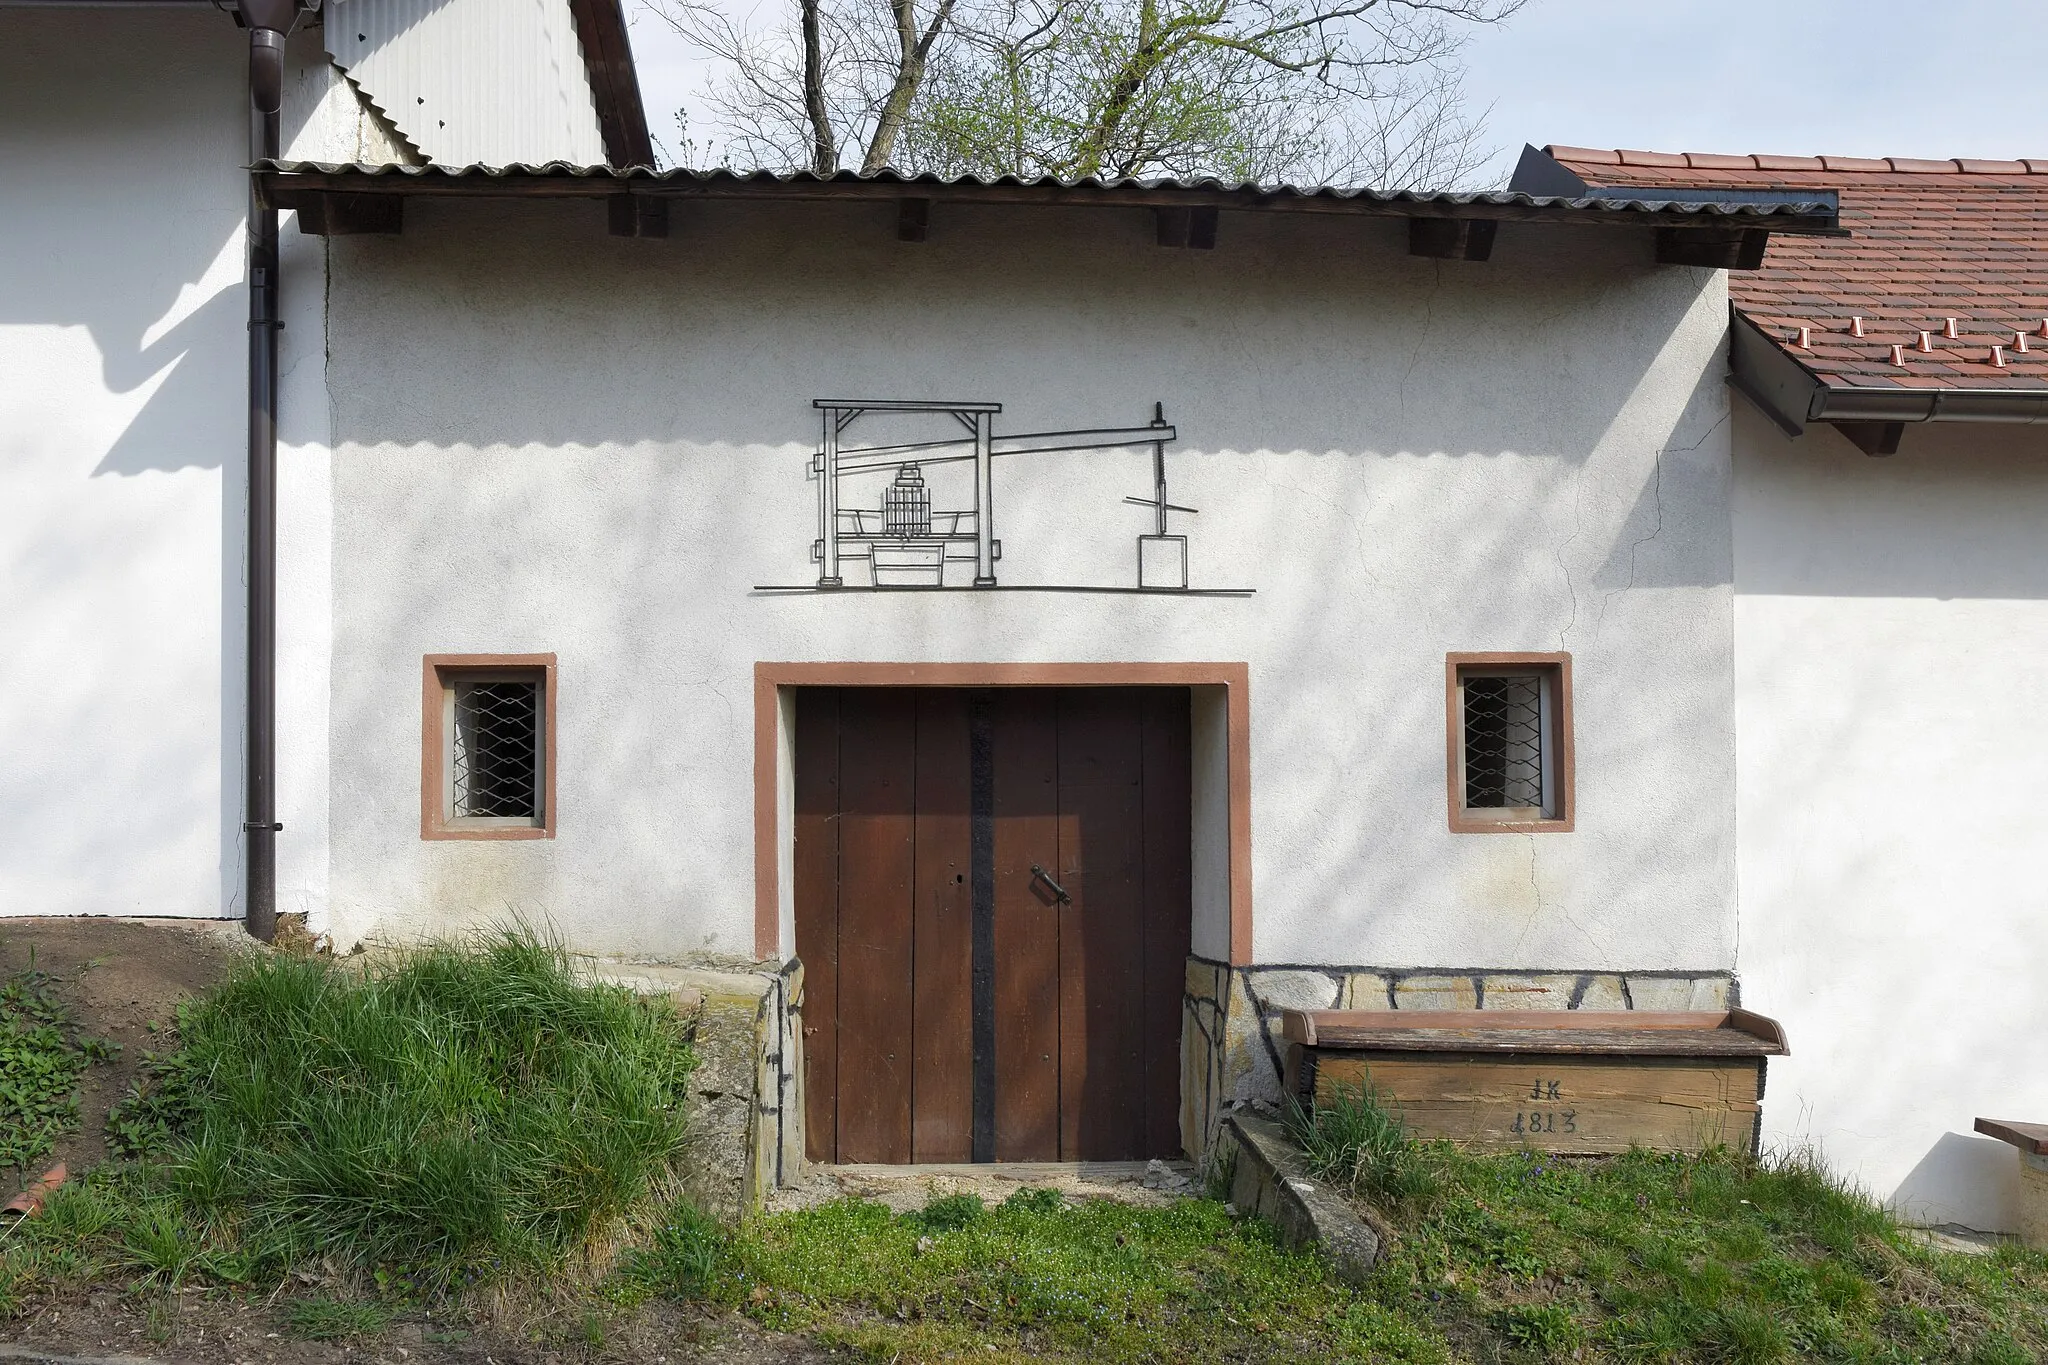 Photo showing: Objekt in der Kellergasse Nähe Jägerhaus in der KG Immendorf in Wullersdorf